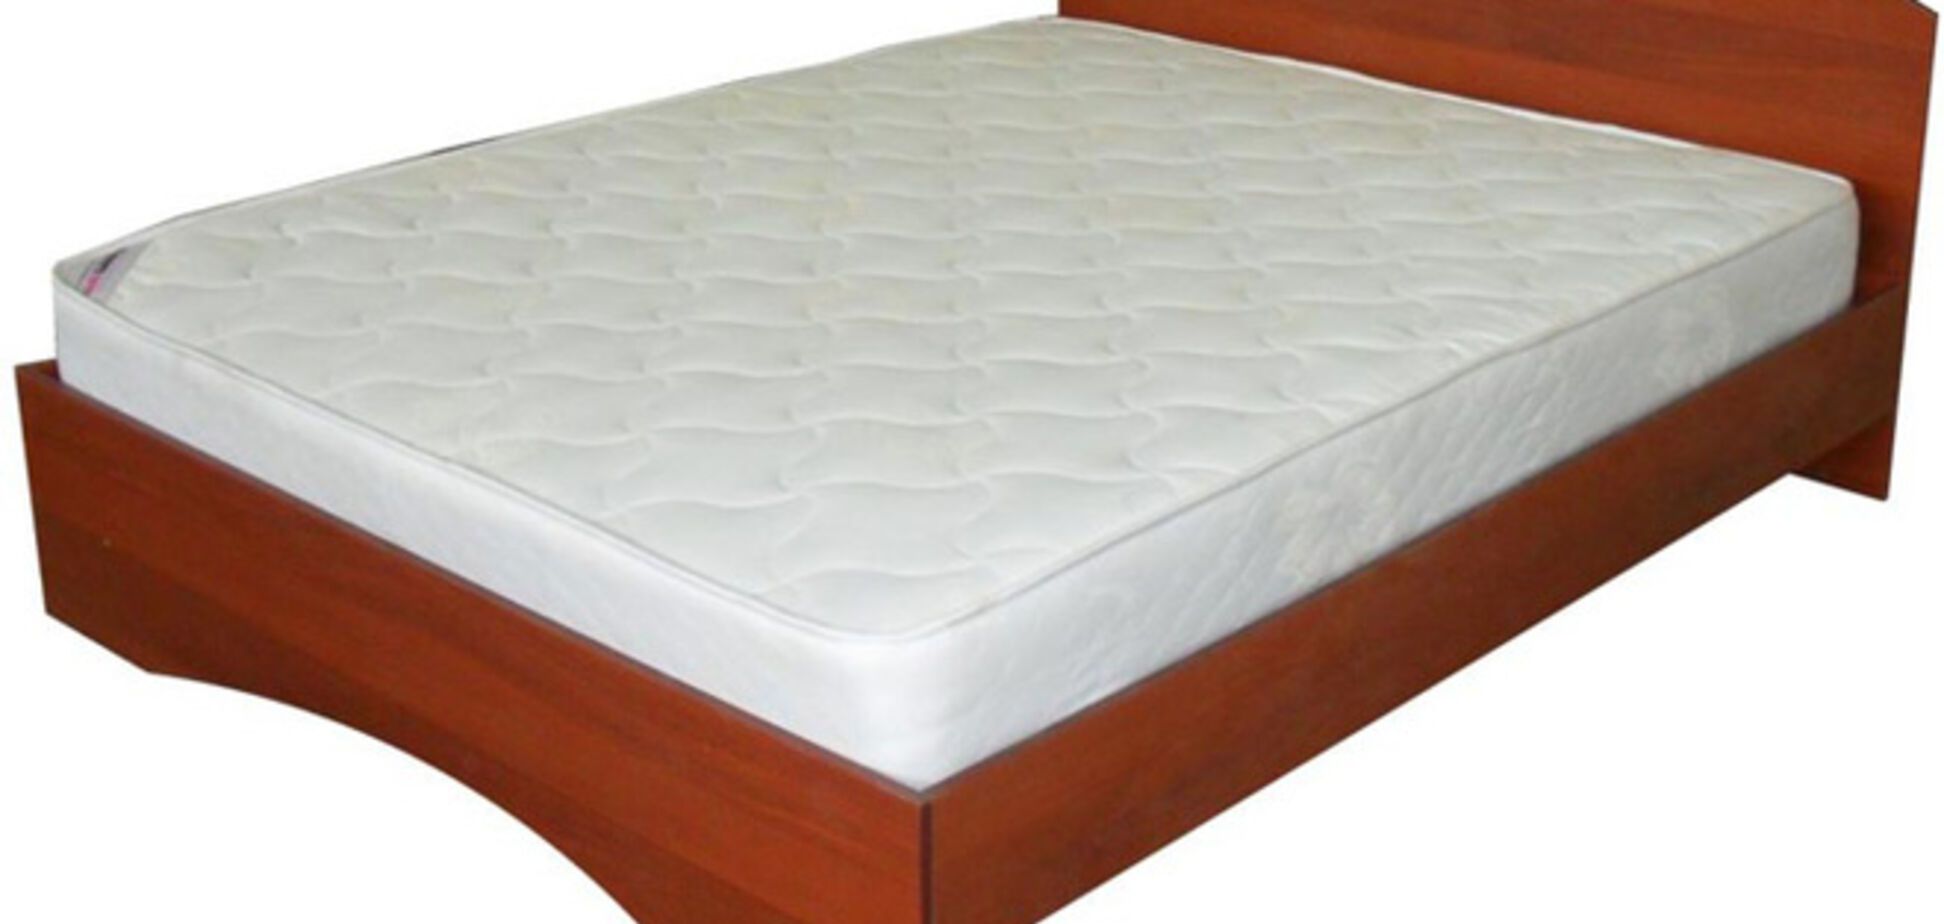 Купить недорогую кровать можно теперь в Интернете